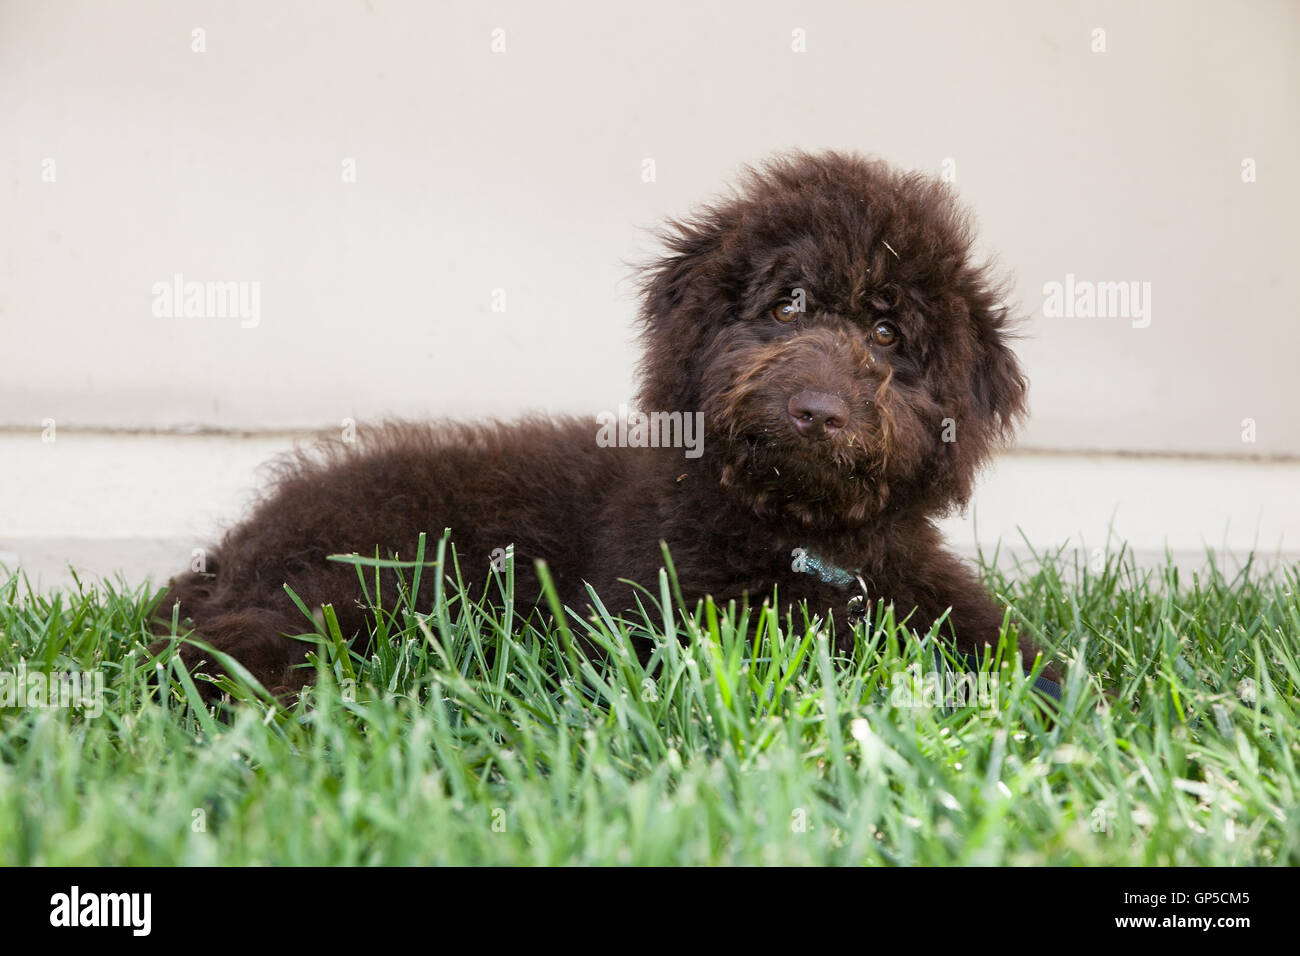 niedliche lockigen Haaren Schokolade braun Labradoodle Welpen Hund legt eine leere Wand in den Rasen mit Rasen auf seinem Gesicht. Stockfoto